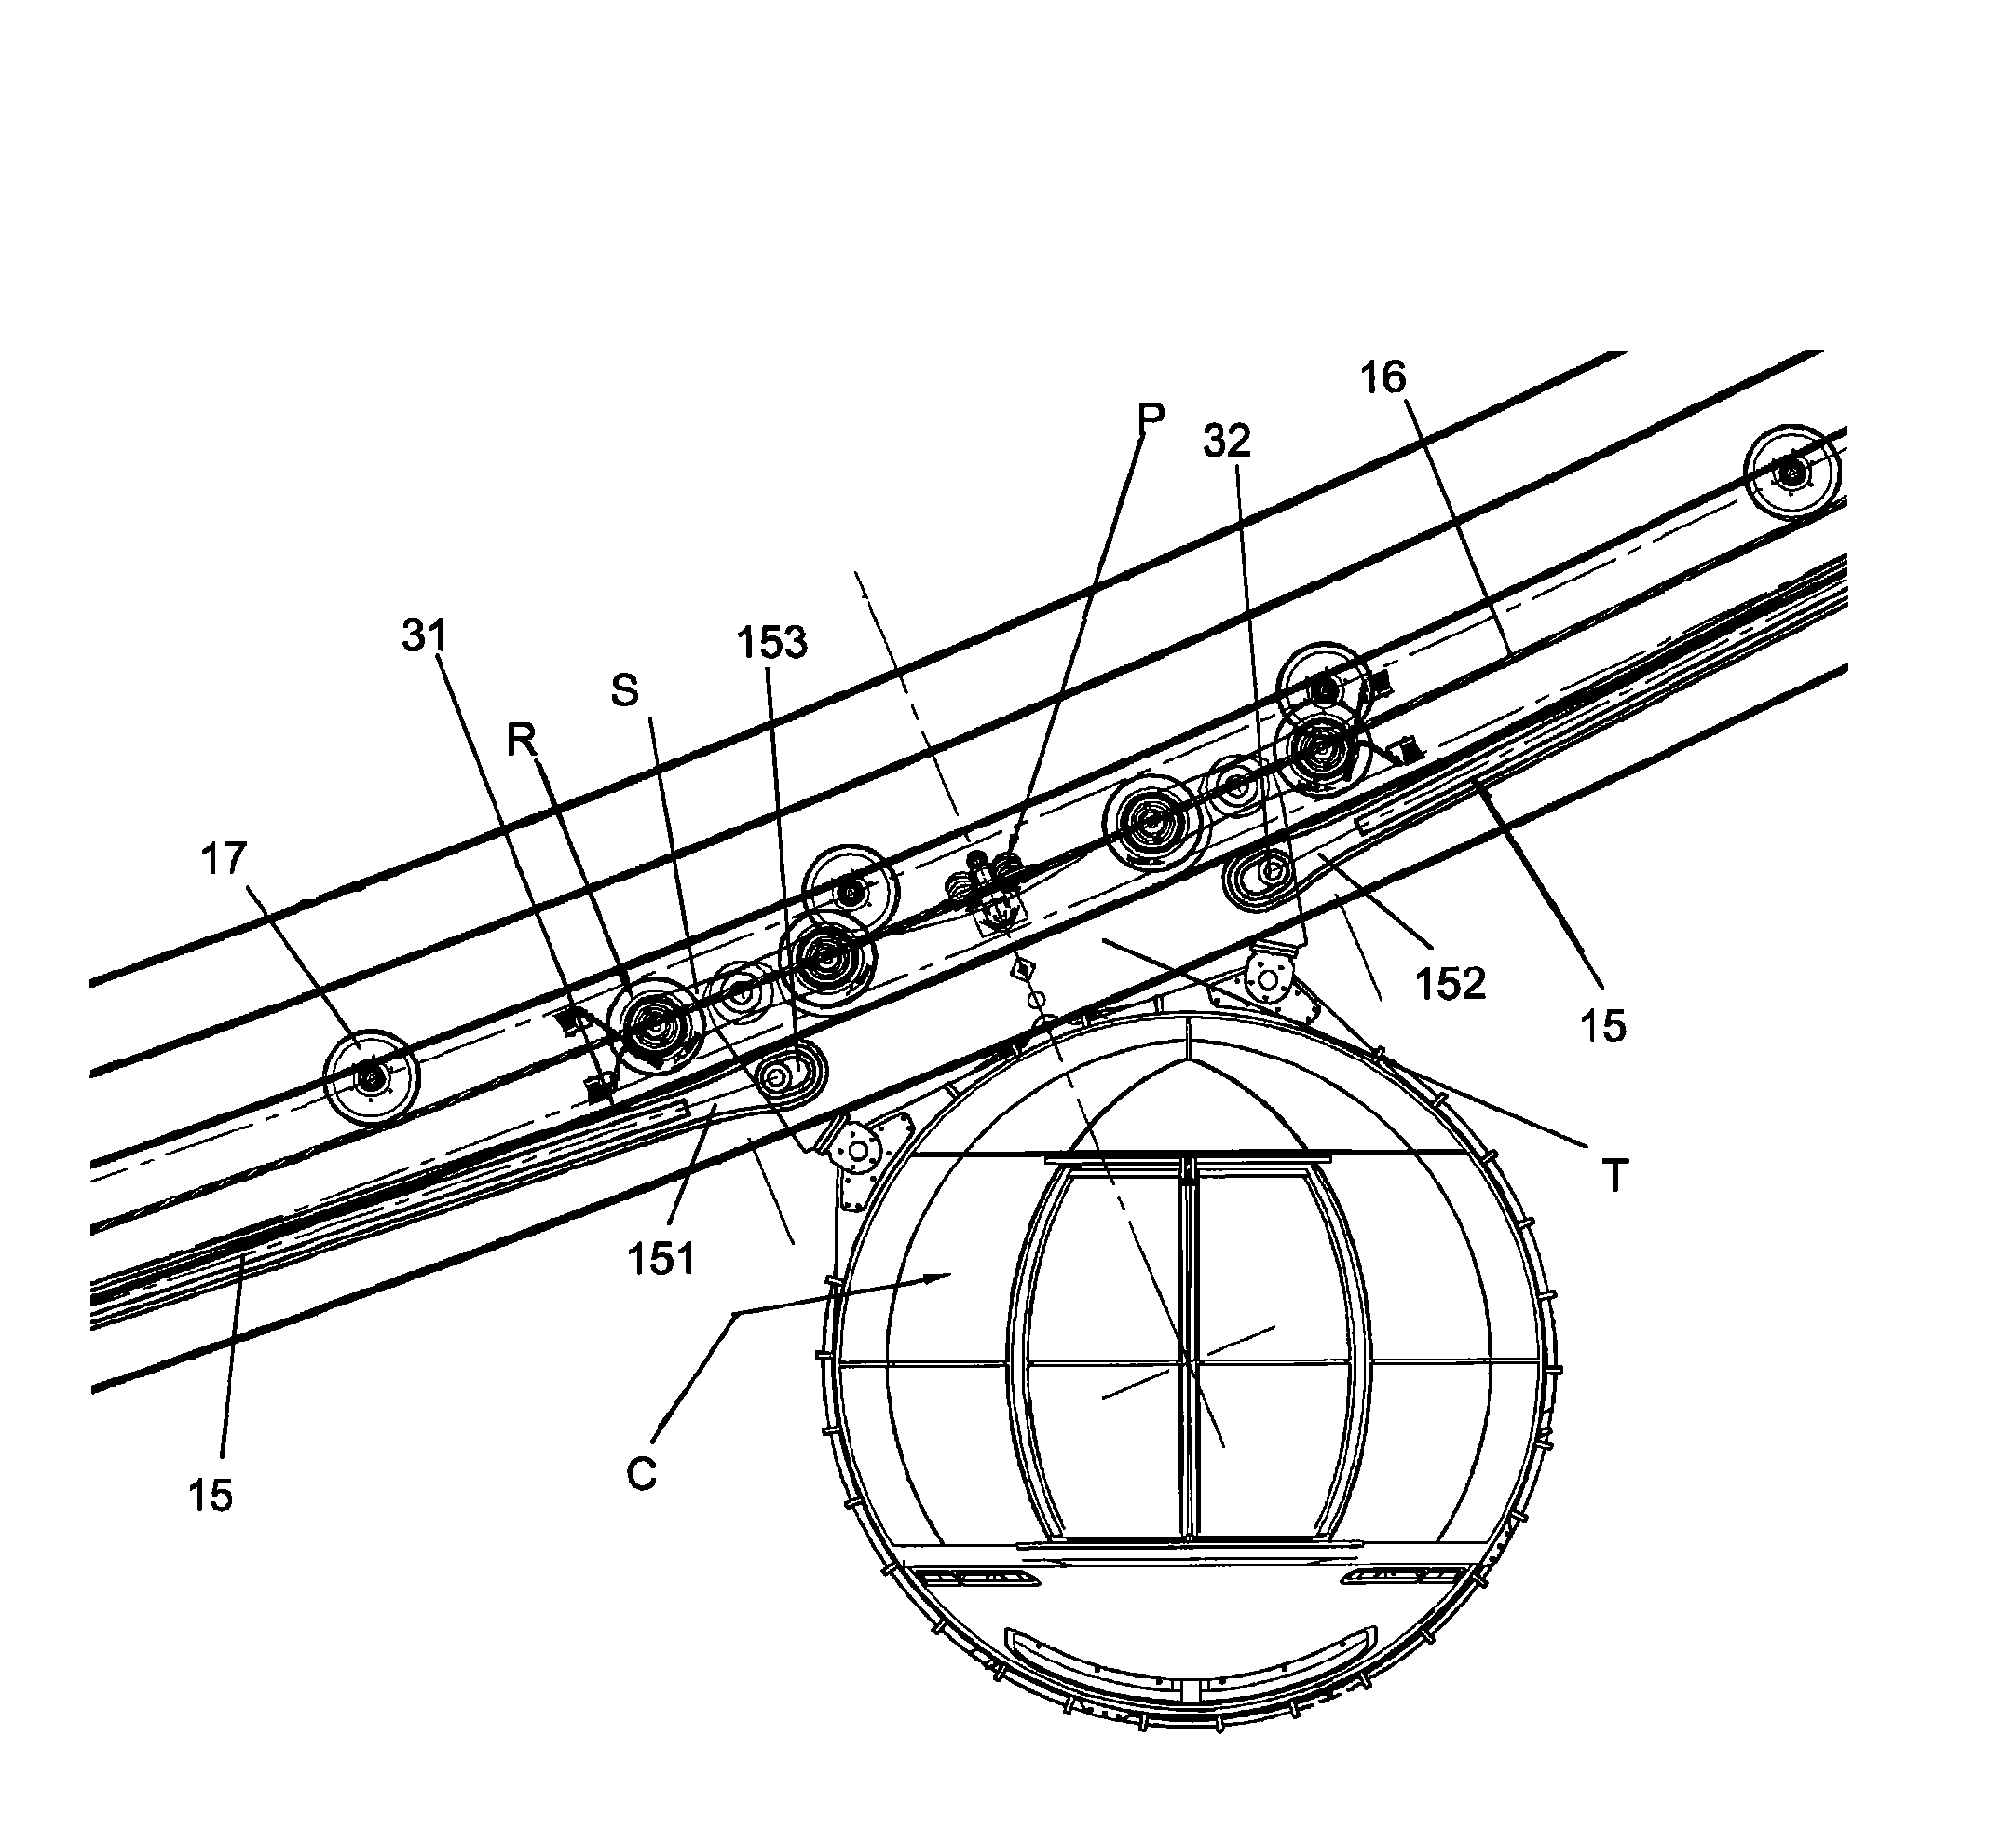 Amusement ride apparatus of ferris wheel type with suspendedgondola cars